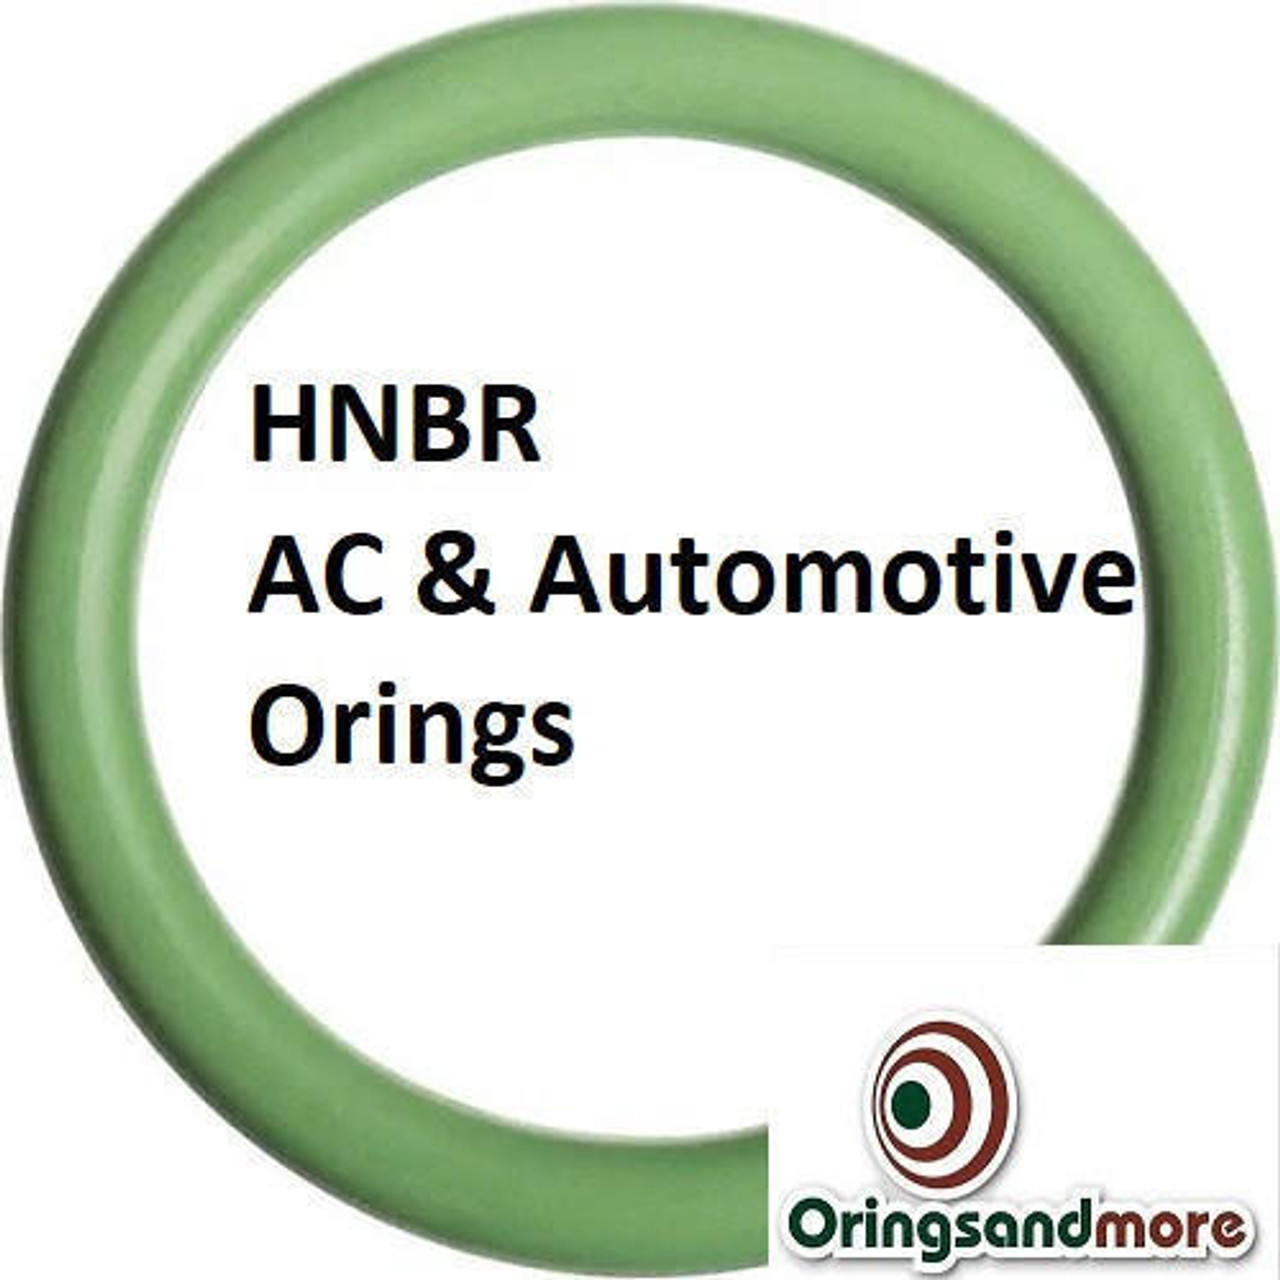 HNBR Orings  # 149-70D Green Minimum 3 pcs